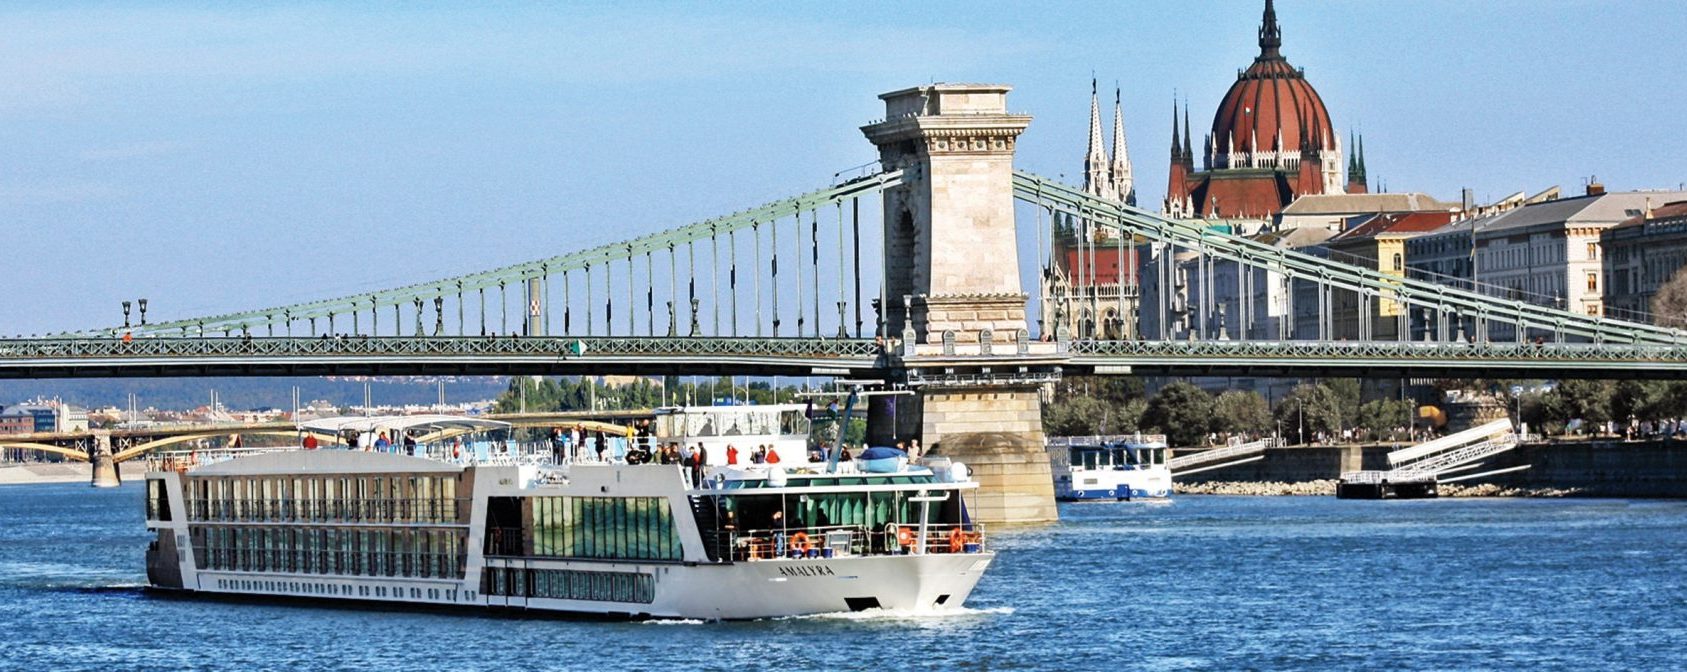 AmaWaterways Paris & Normandy Seine River Cruise